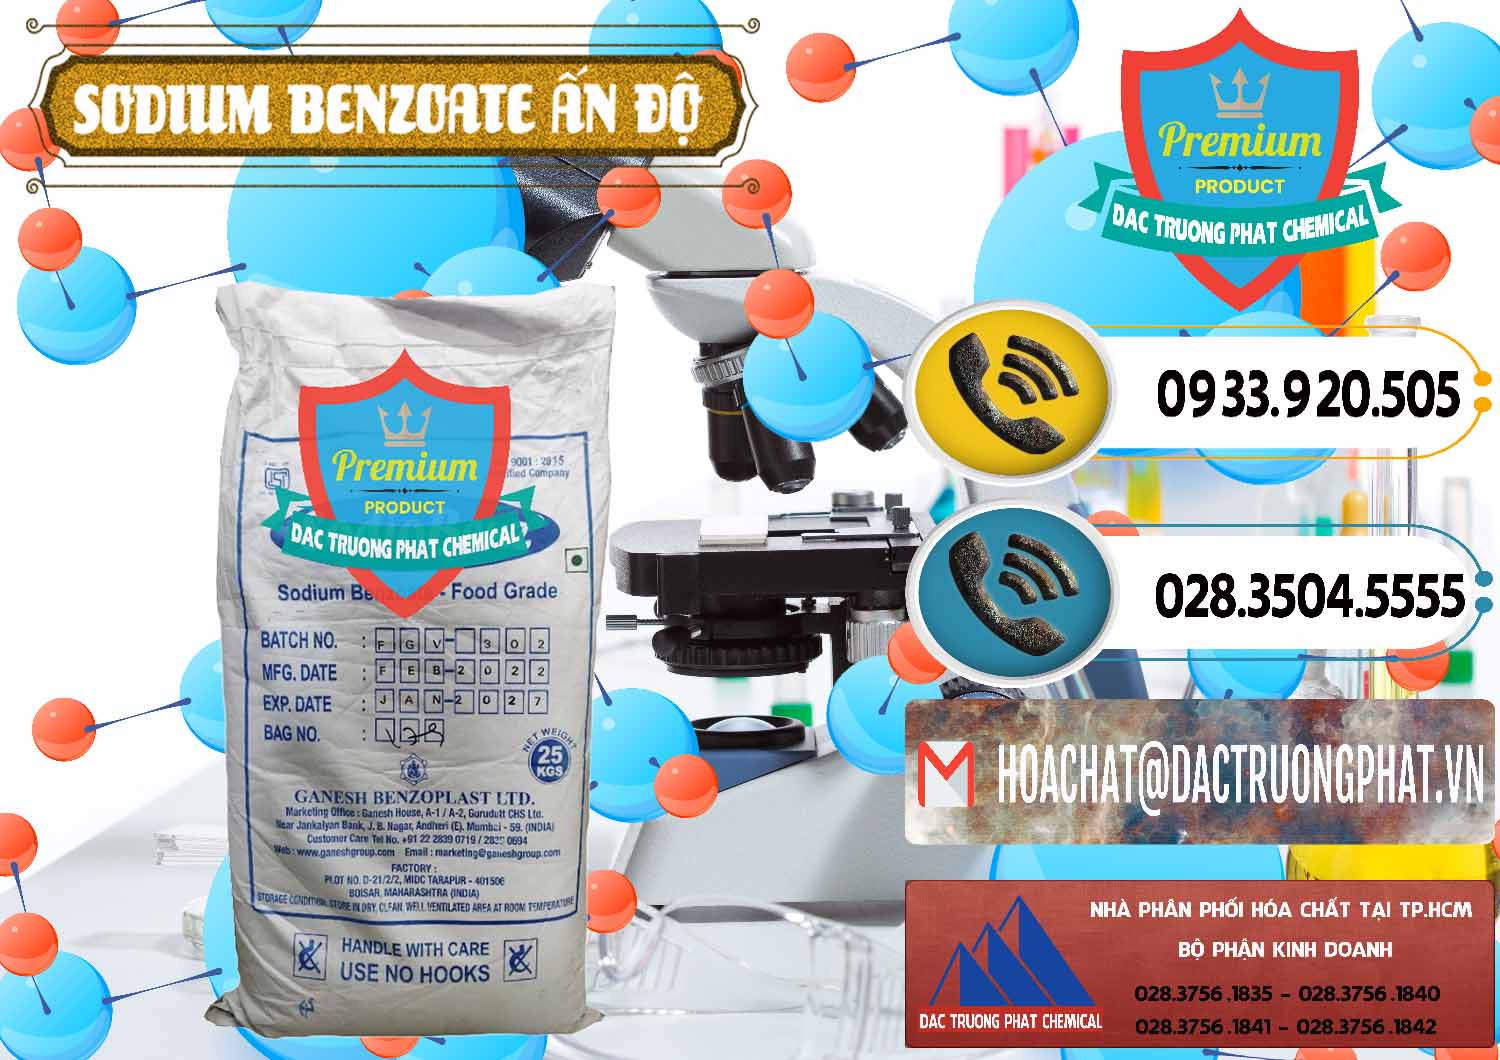 Cty chuyên cung ứng - bán Sodium Benzoate - Mốc Bột Ấn Độ India - 0361 - Chuyên phân phối ( kinh doanh ) hóa chất tại TP.HCM - hoachatdetnhuom.vn